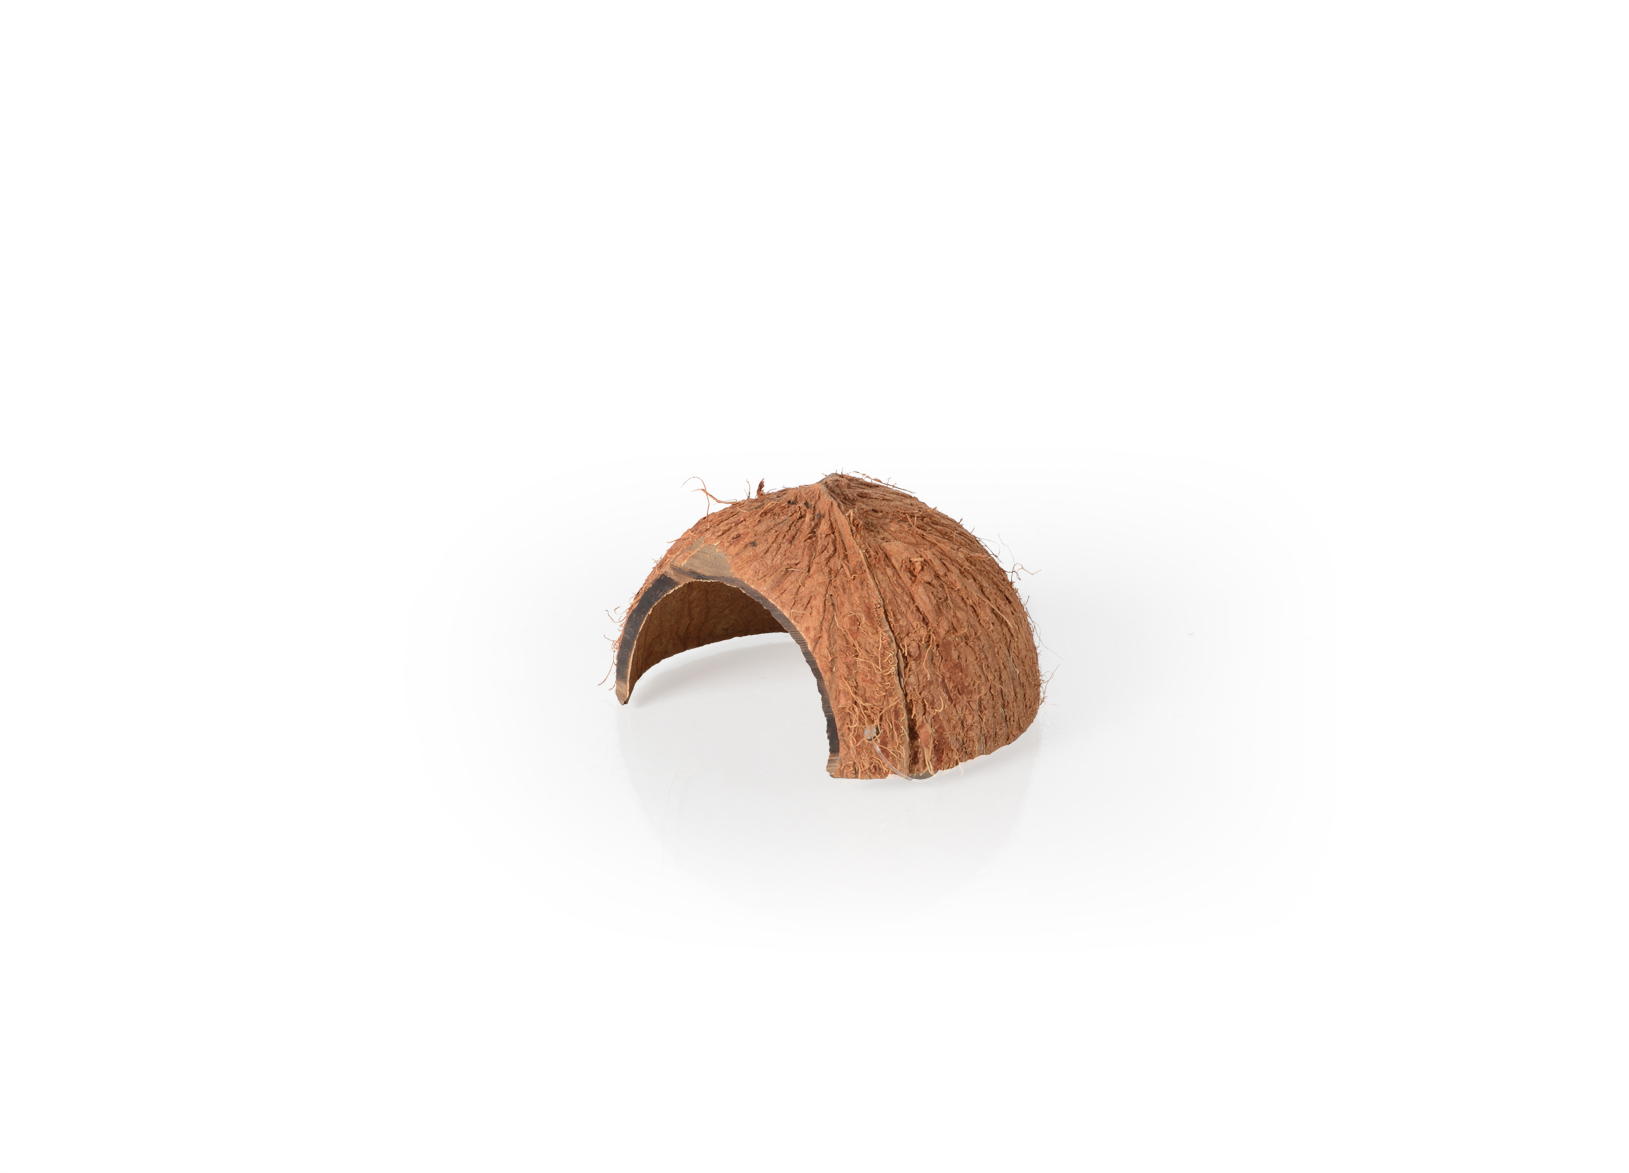 Repti Zoo kokosová skořápka s otvorem 10x8 cm